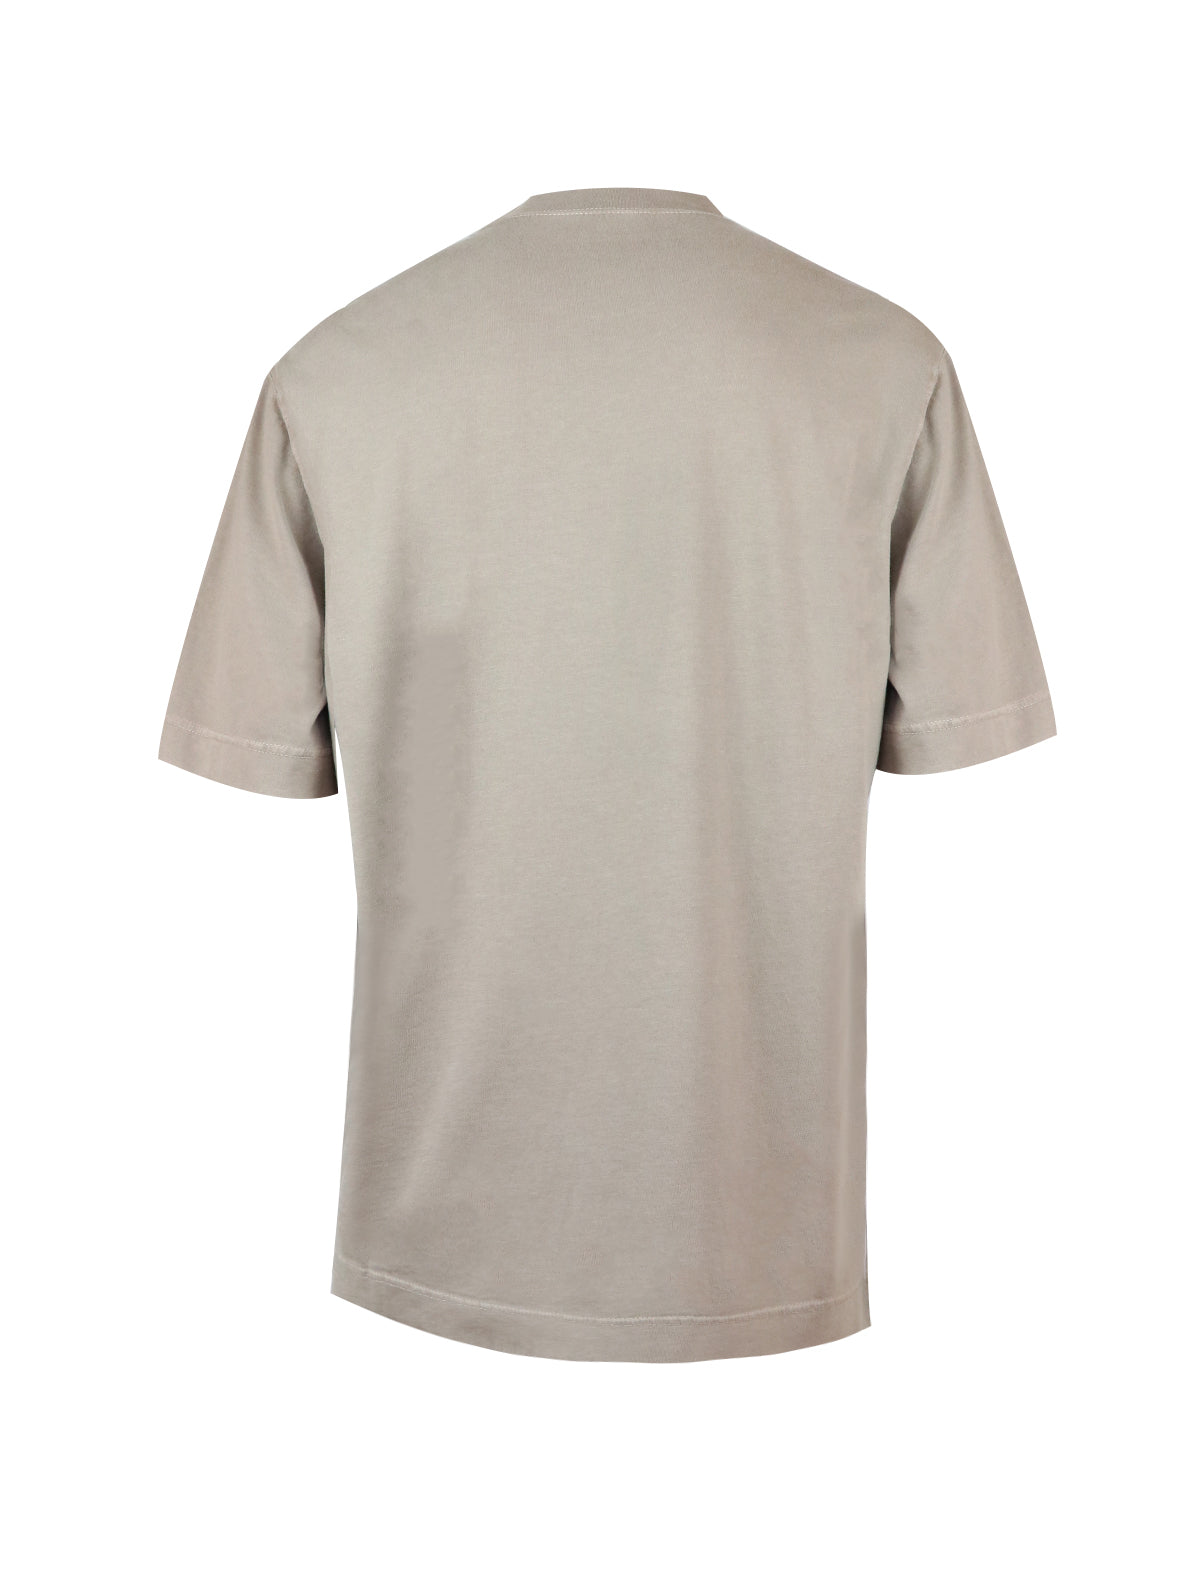 CIRCOLO 1901 Cotton Jersey T-Shirt in Khaki